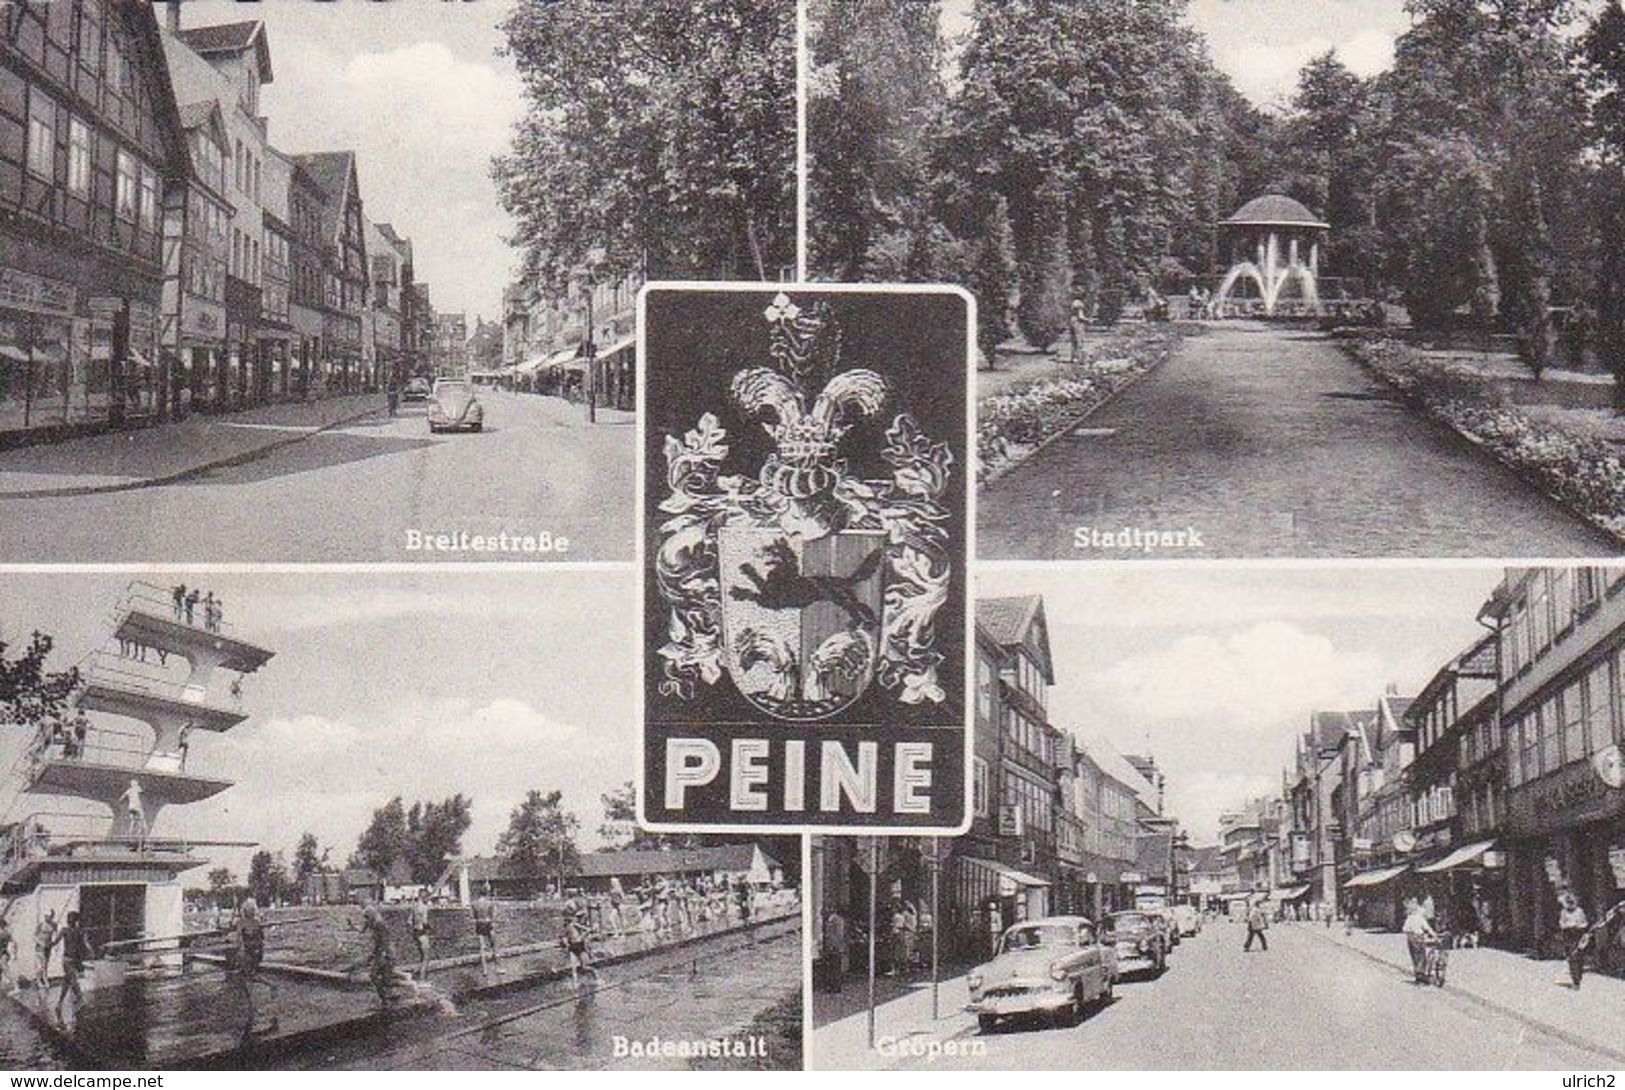 AK Peine - Mehrbildkarte - Breitestraße Stadtpark Badeanstalt Gröpern - 1962 (50952) - Peine